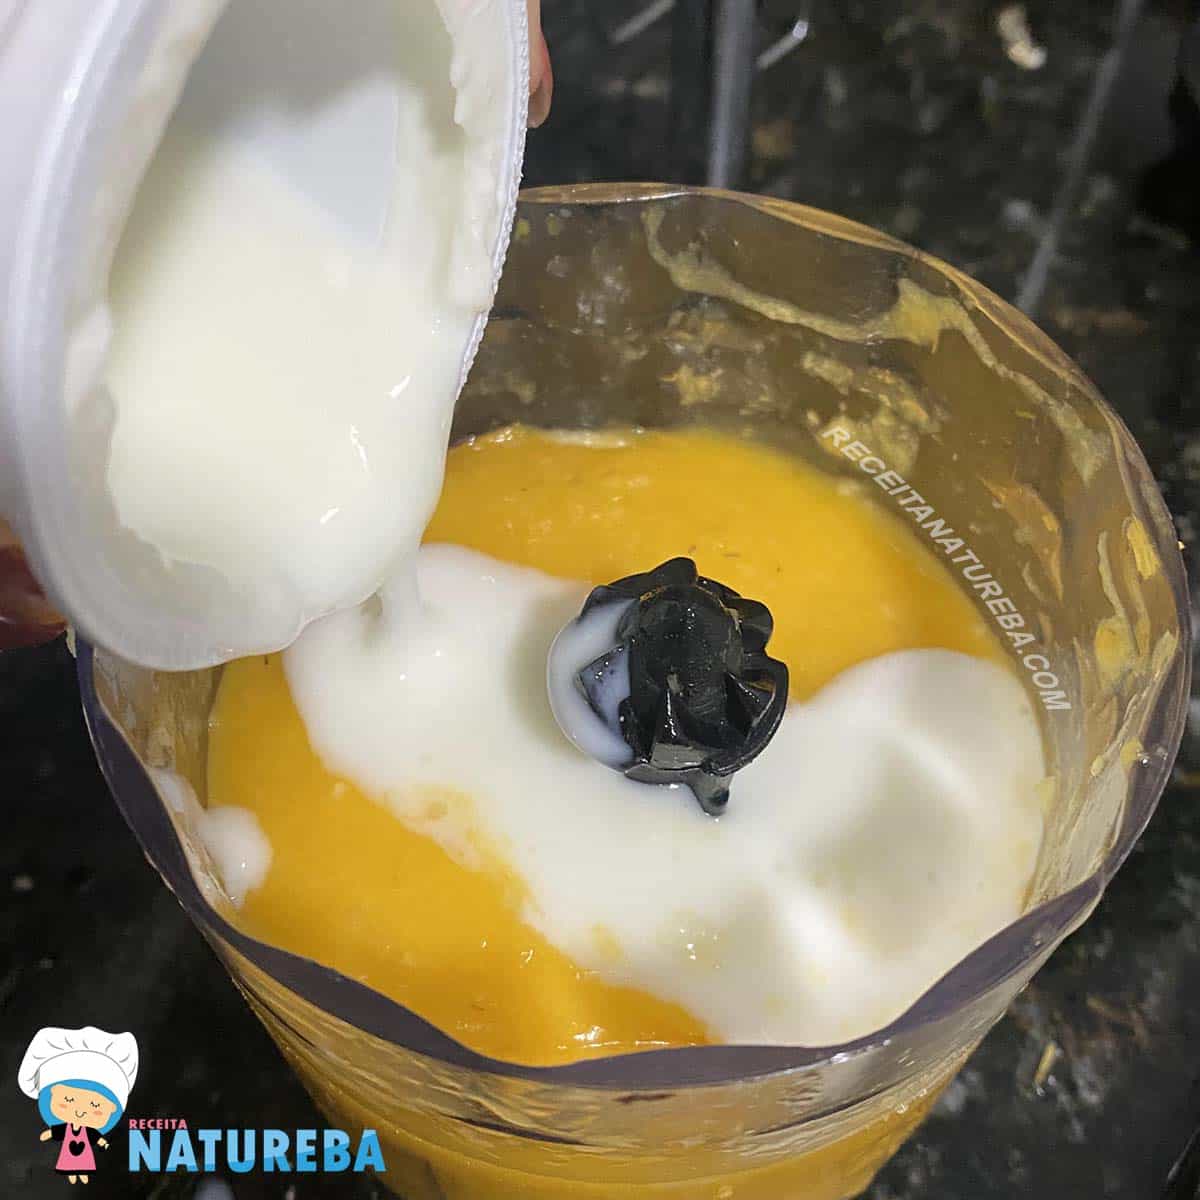 adicionando iogurte natural junto com a manga no processador